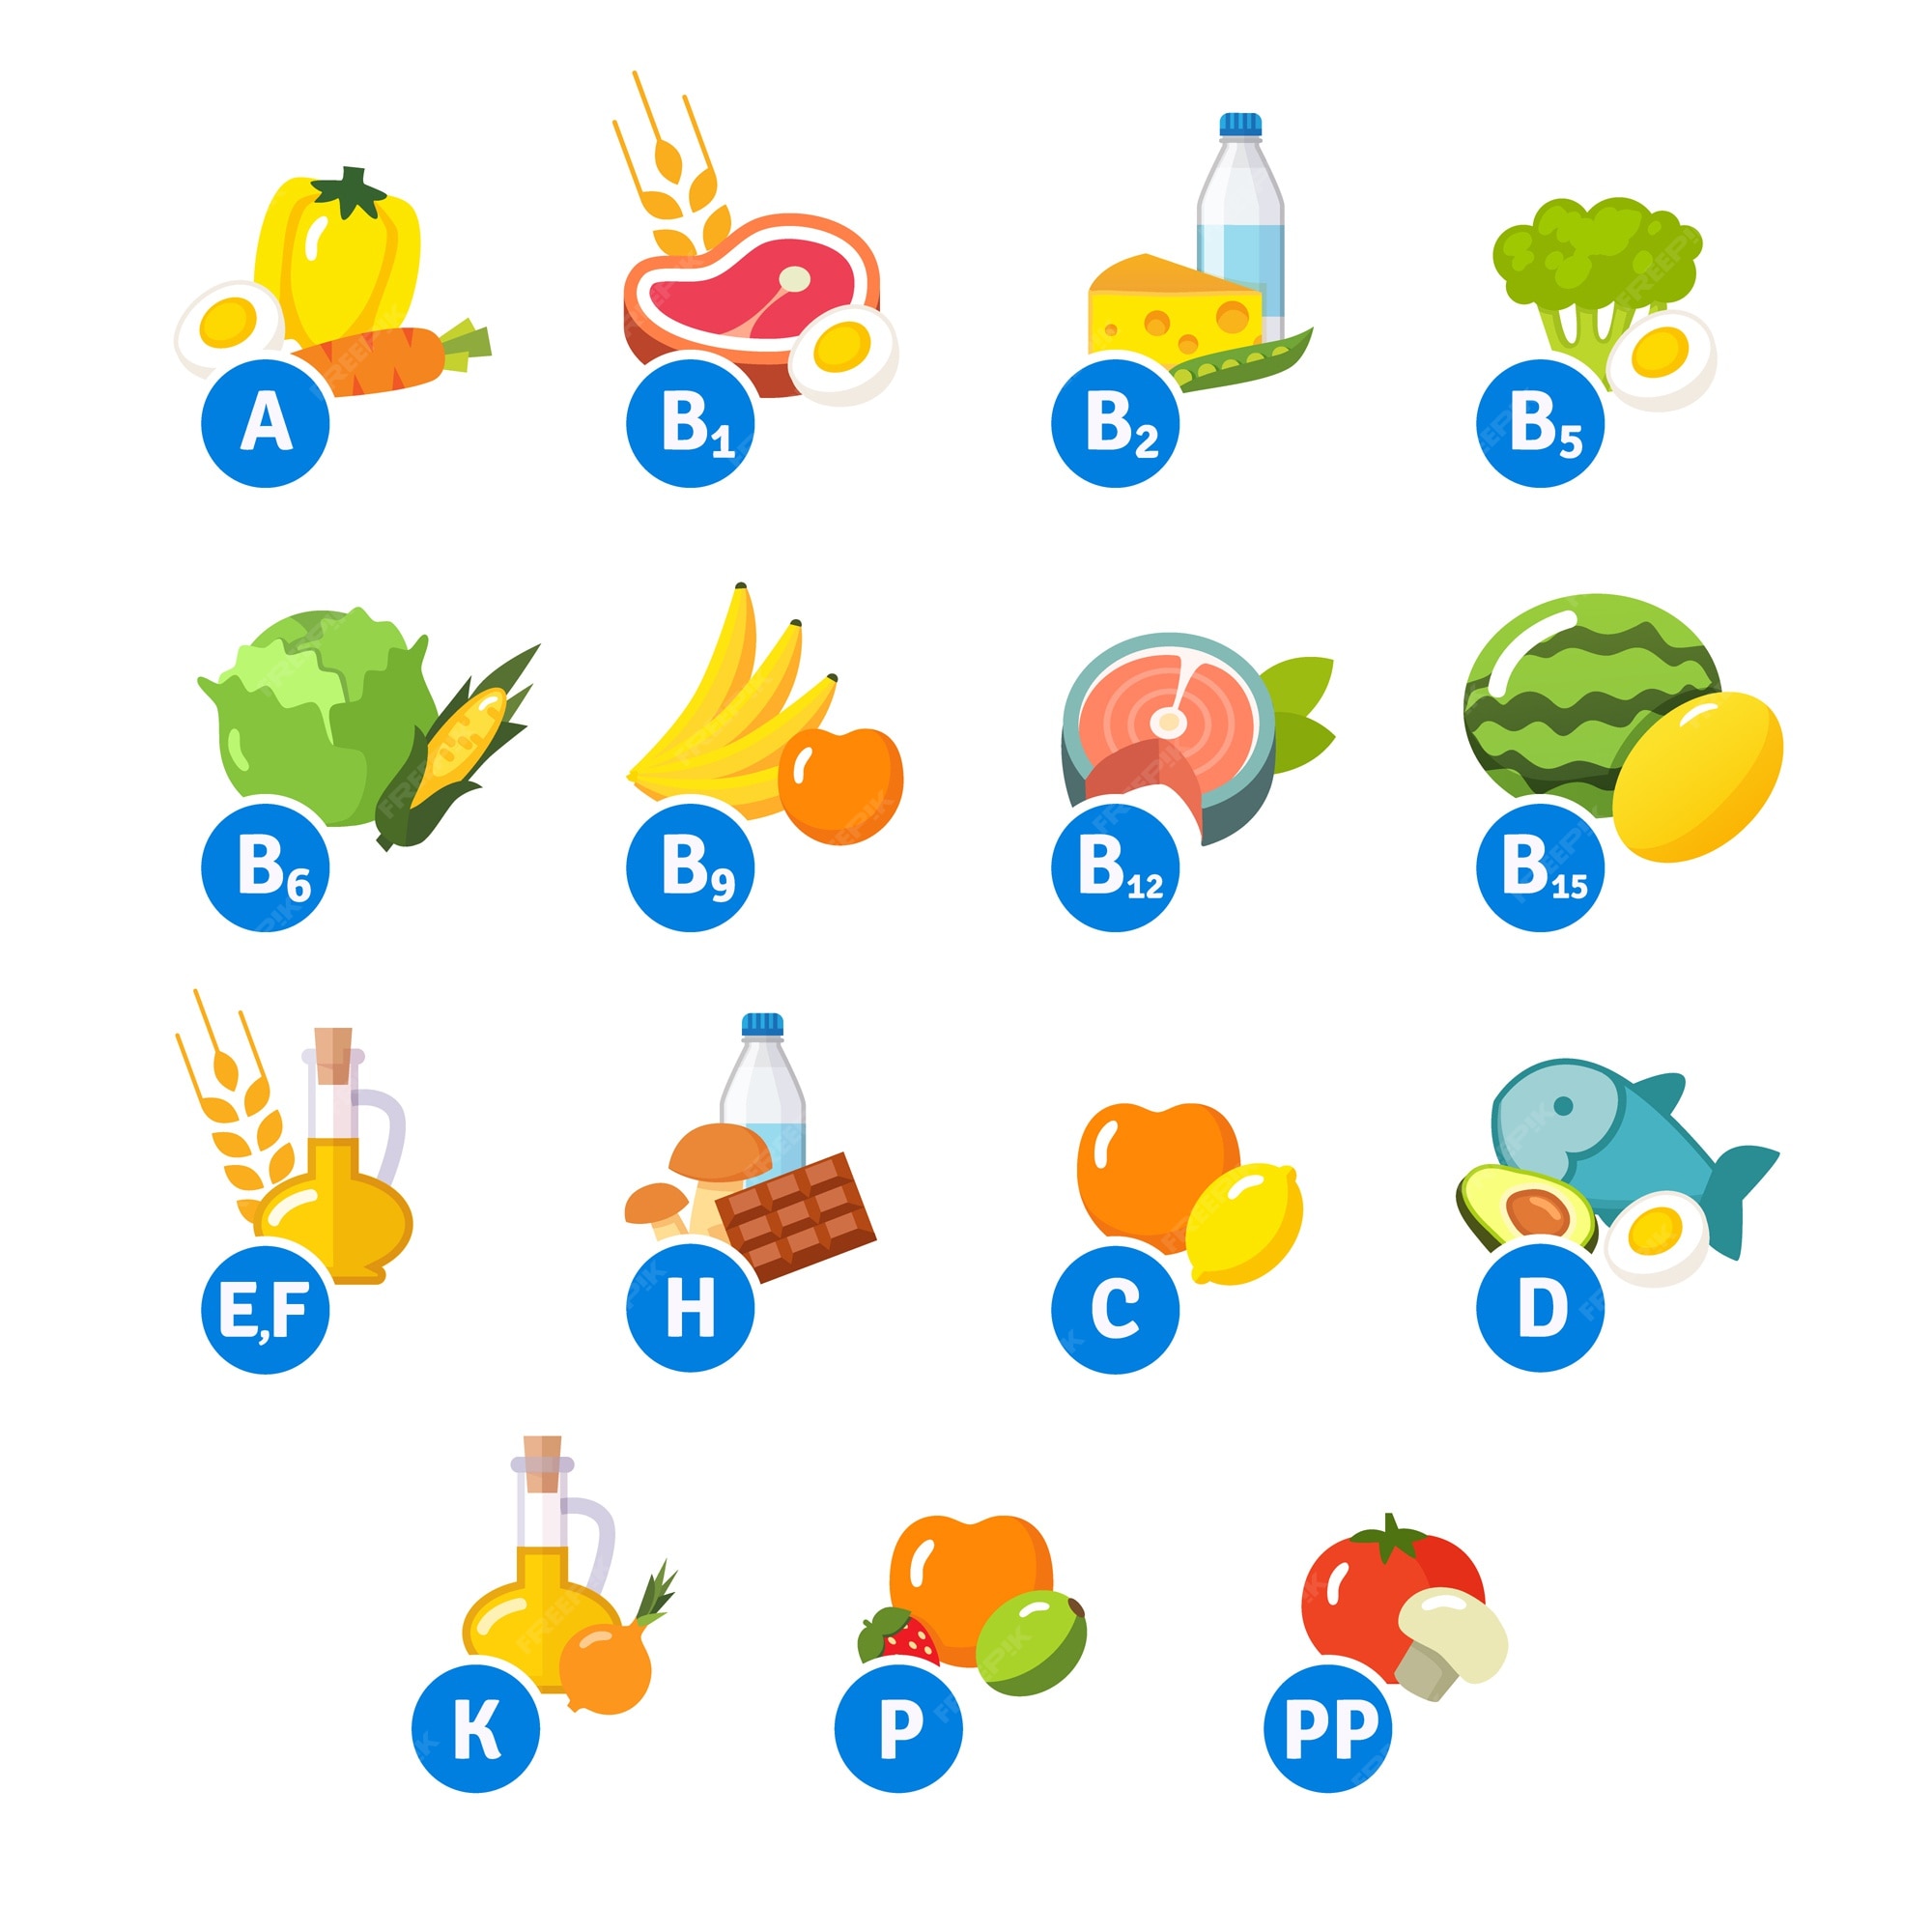 Imágenes de Alimentos Vitaminas - Descarga gratuita en Freepik